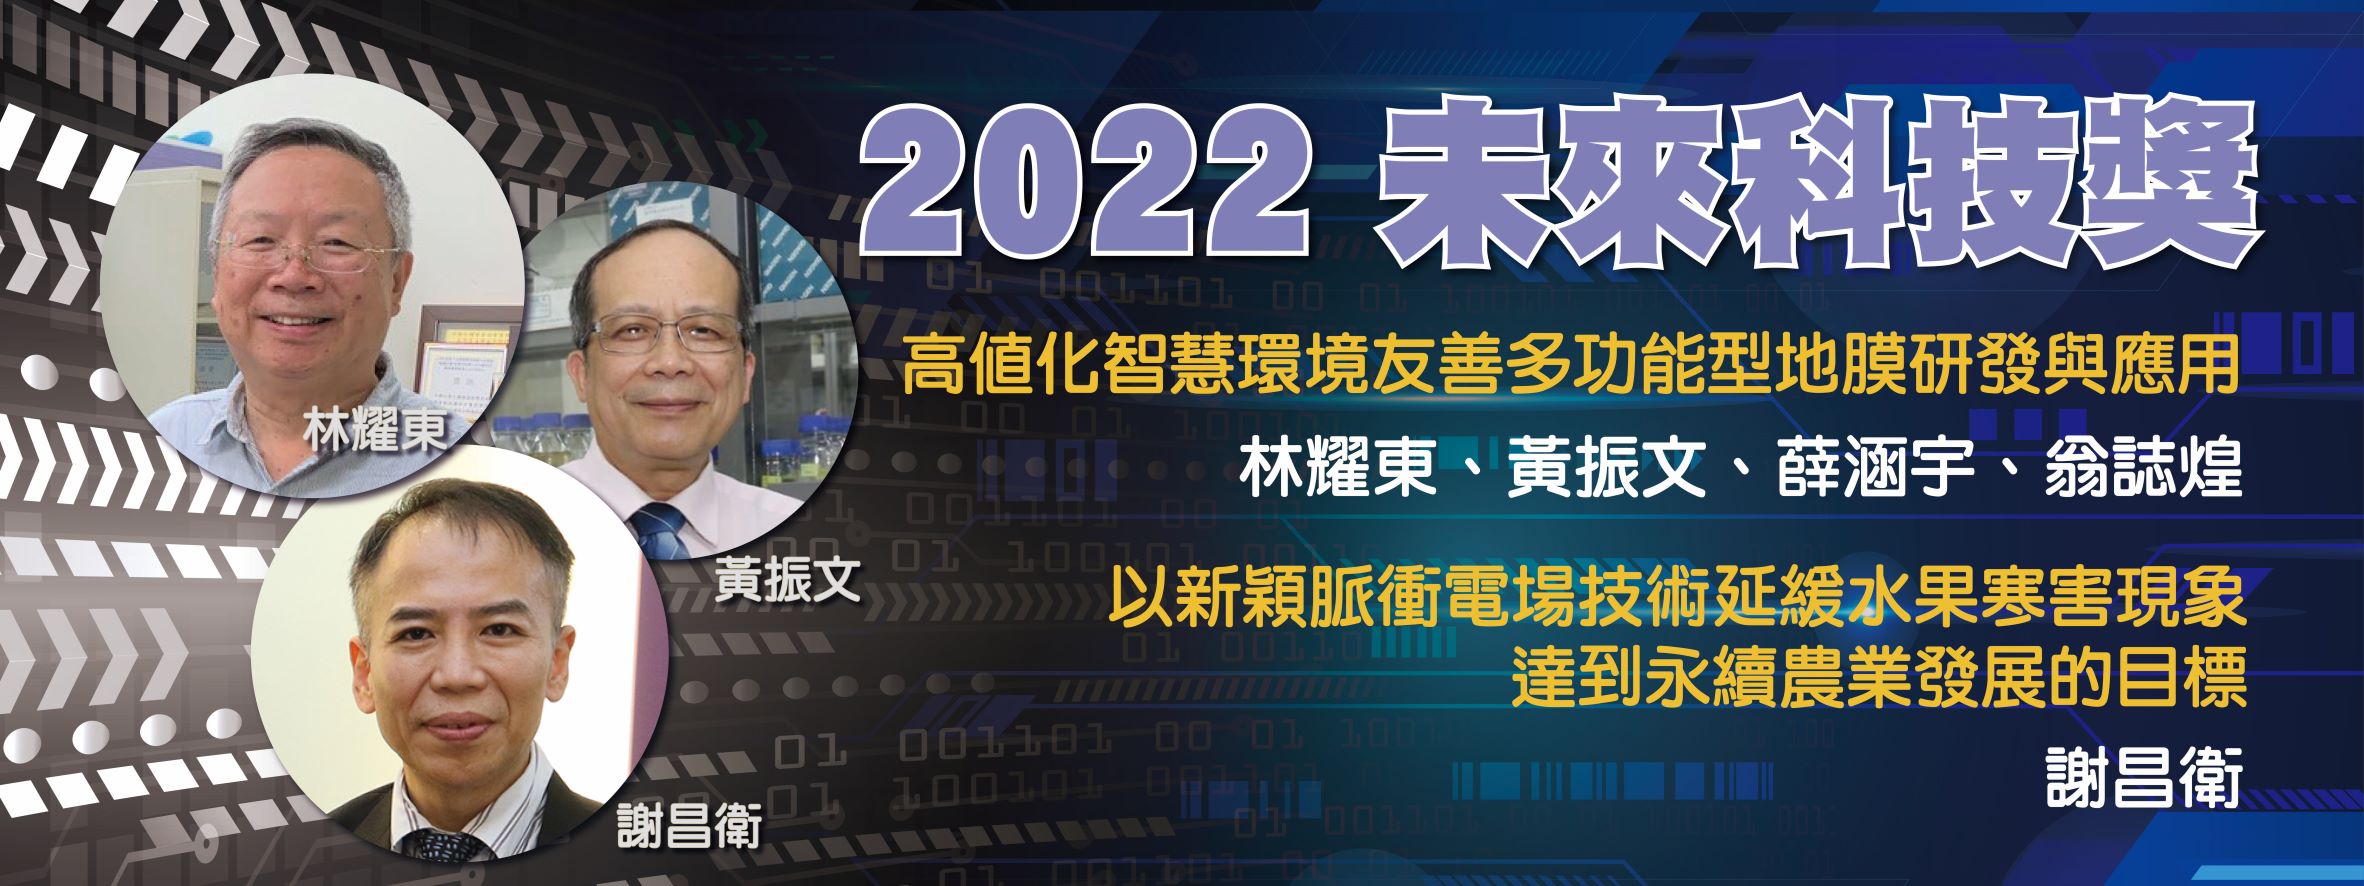 未來科技獎2022